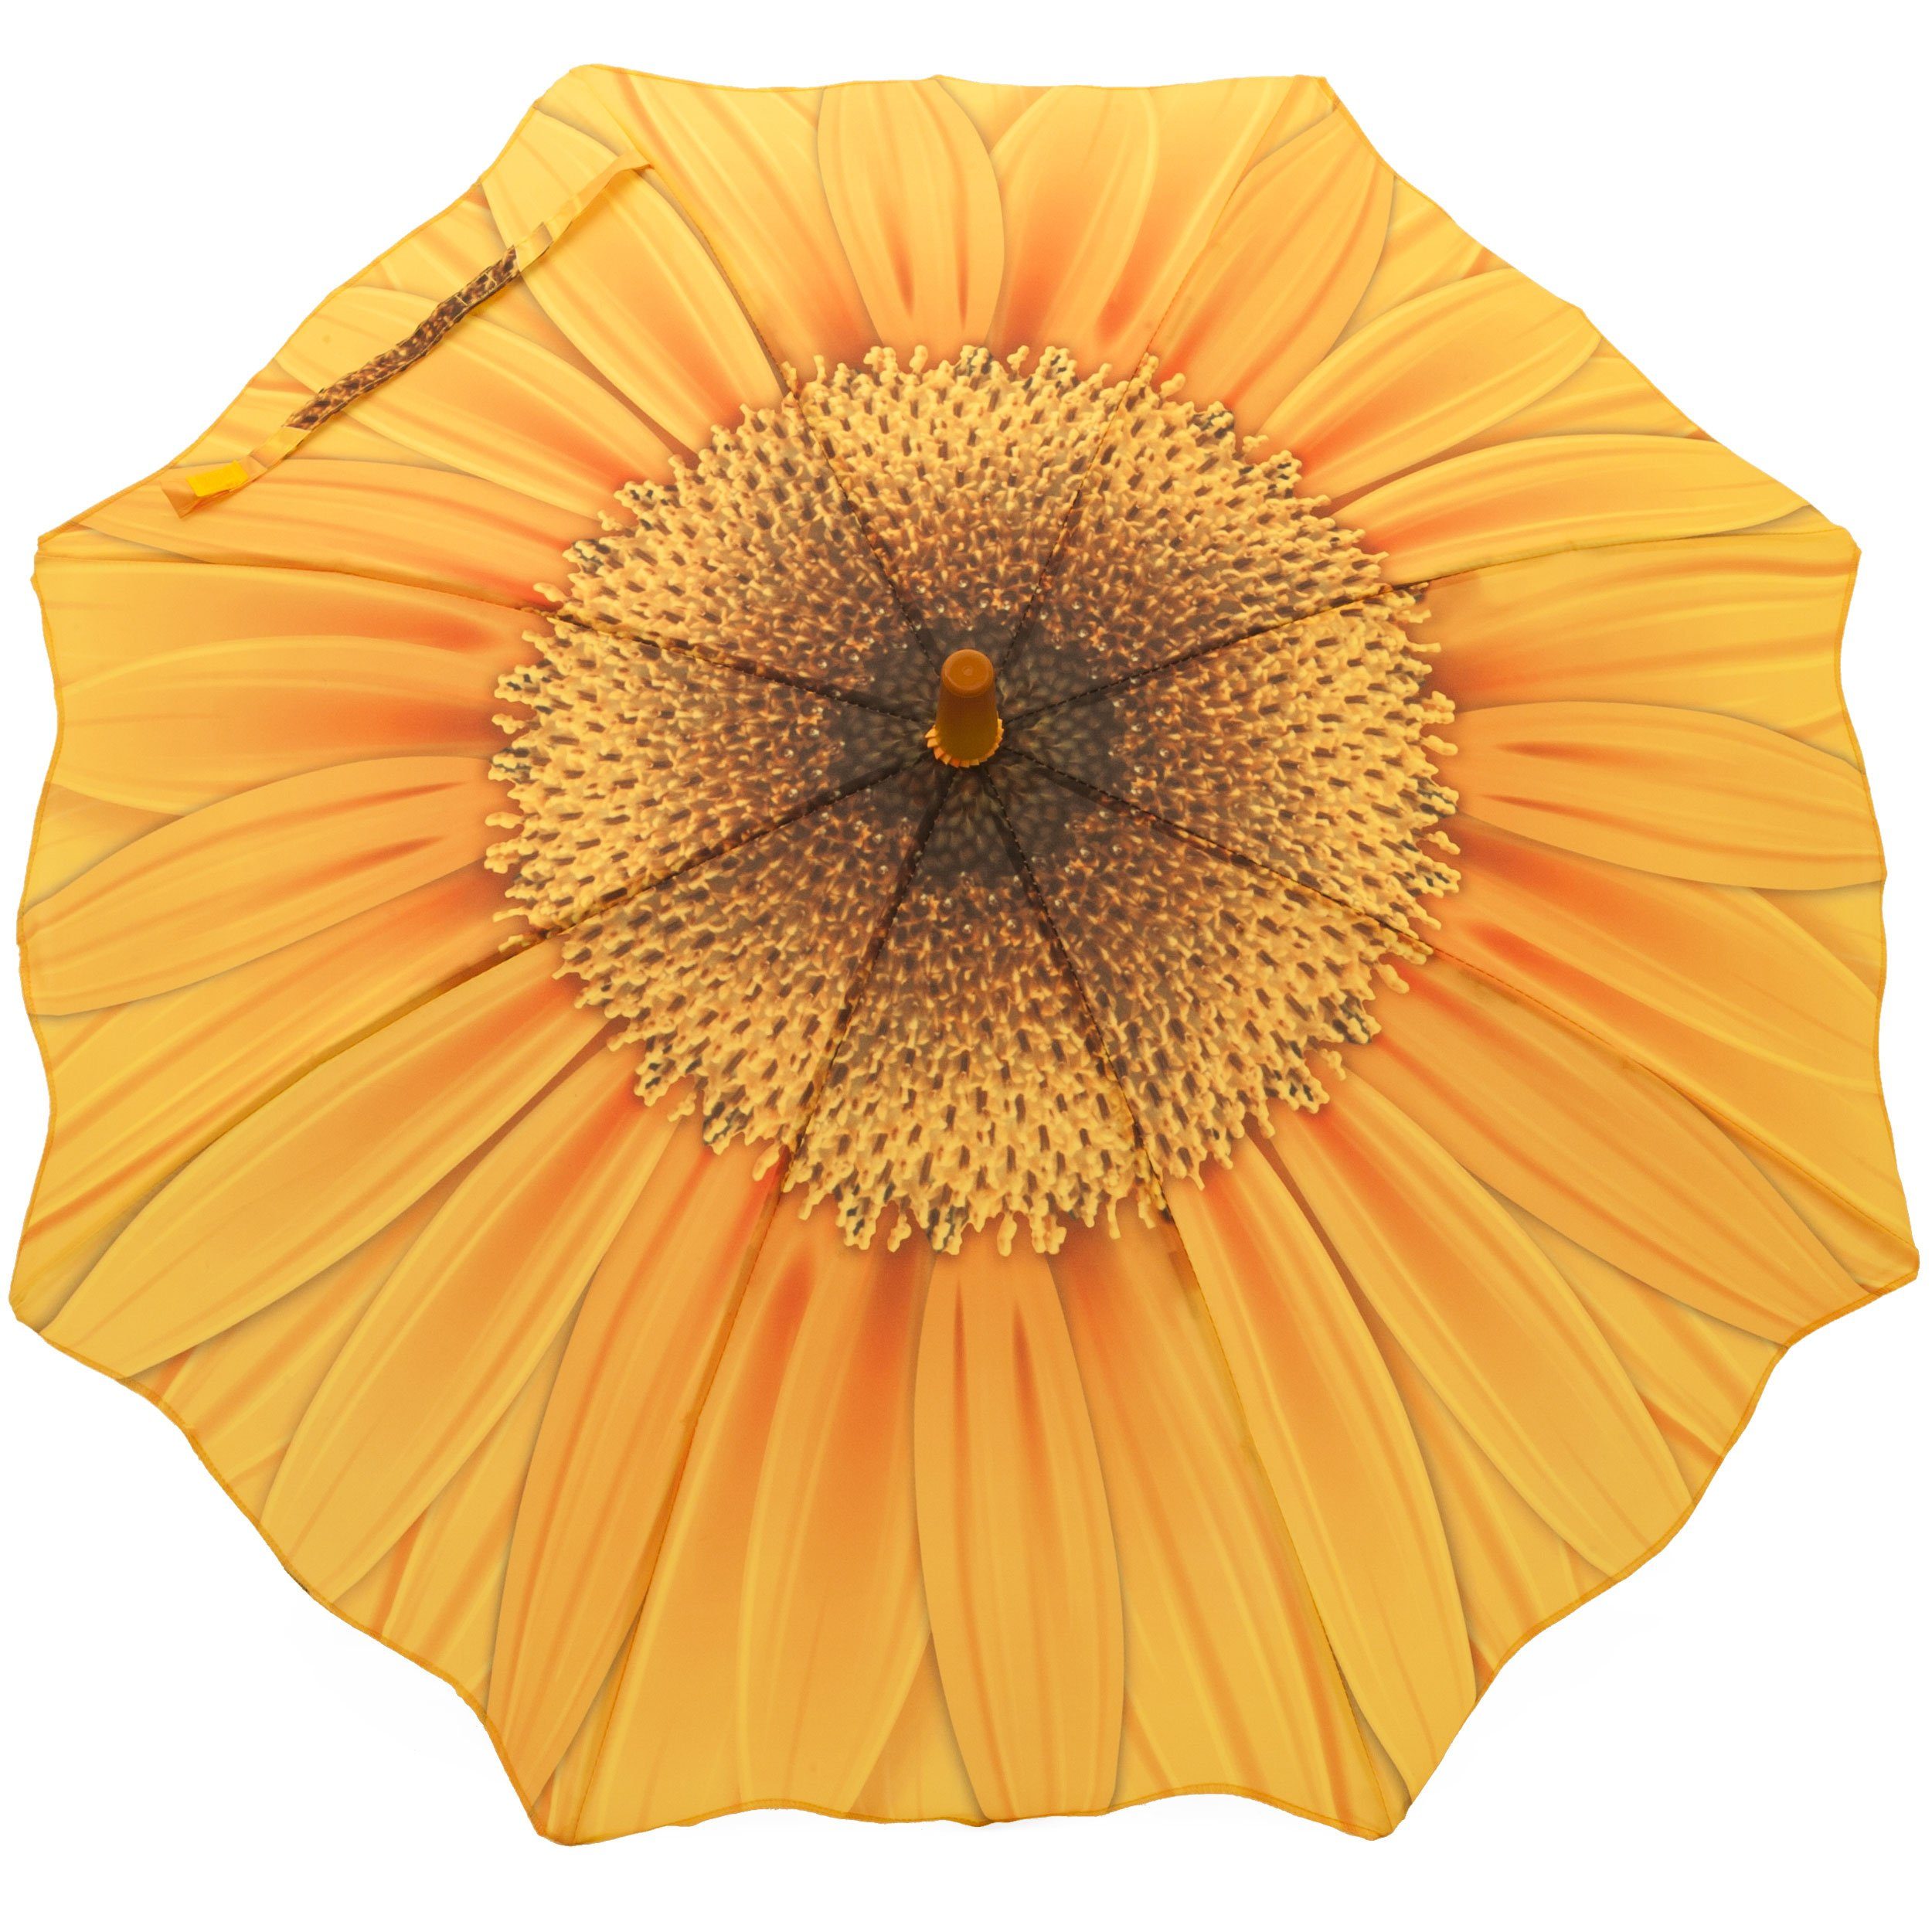 SCHULZ Heidelberg ROSEMARIE mit Motiv für Sonnenblume, Regenschirm Mädchenschirm Mädchen Stockregenschirm Kinderregenschirm Motiv